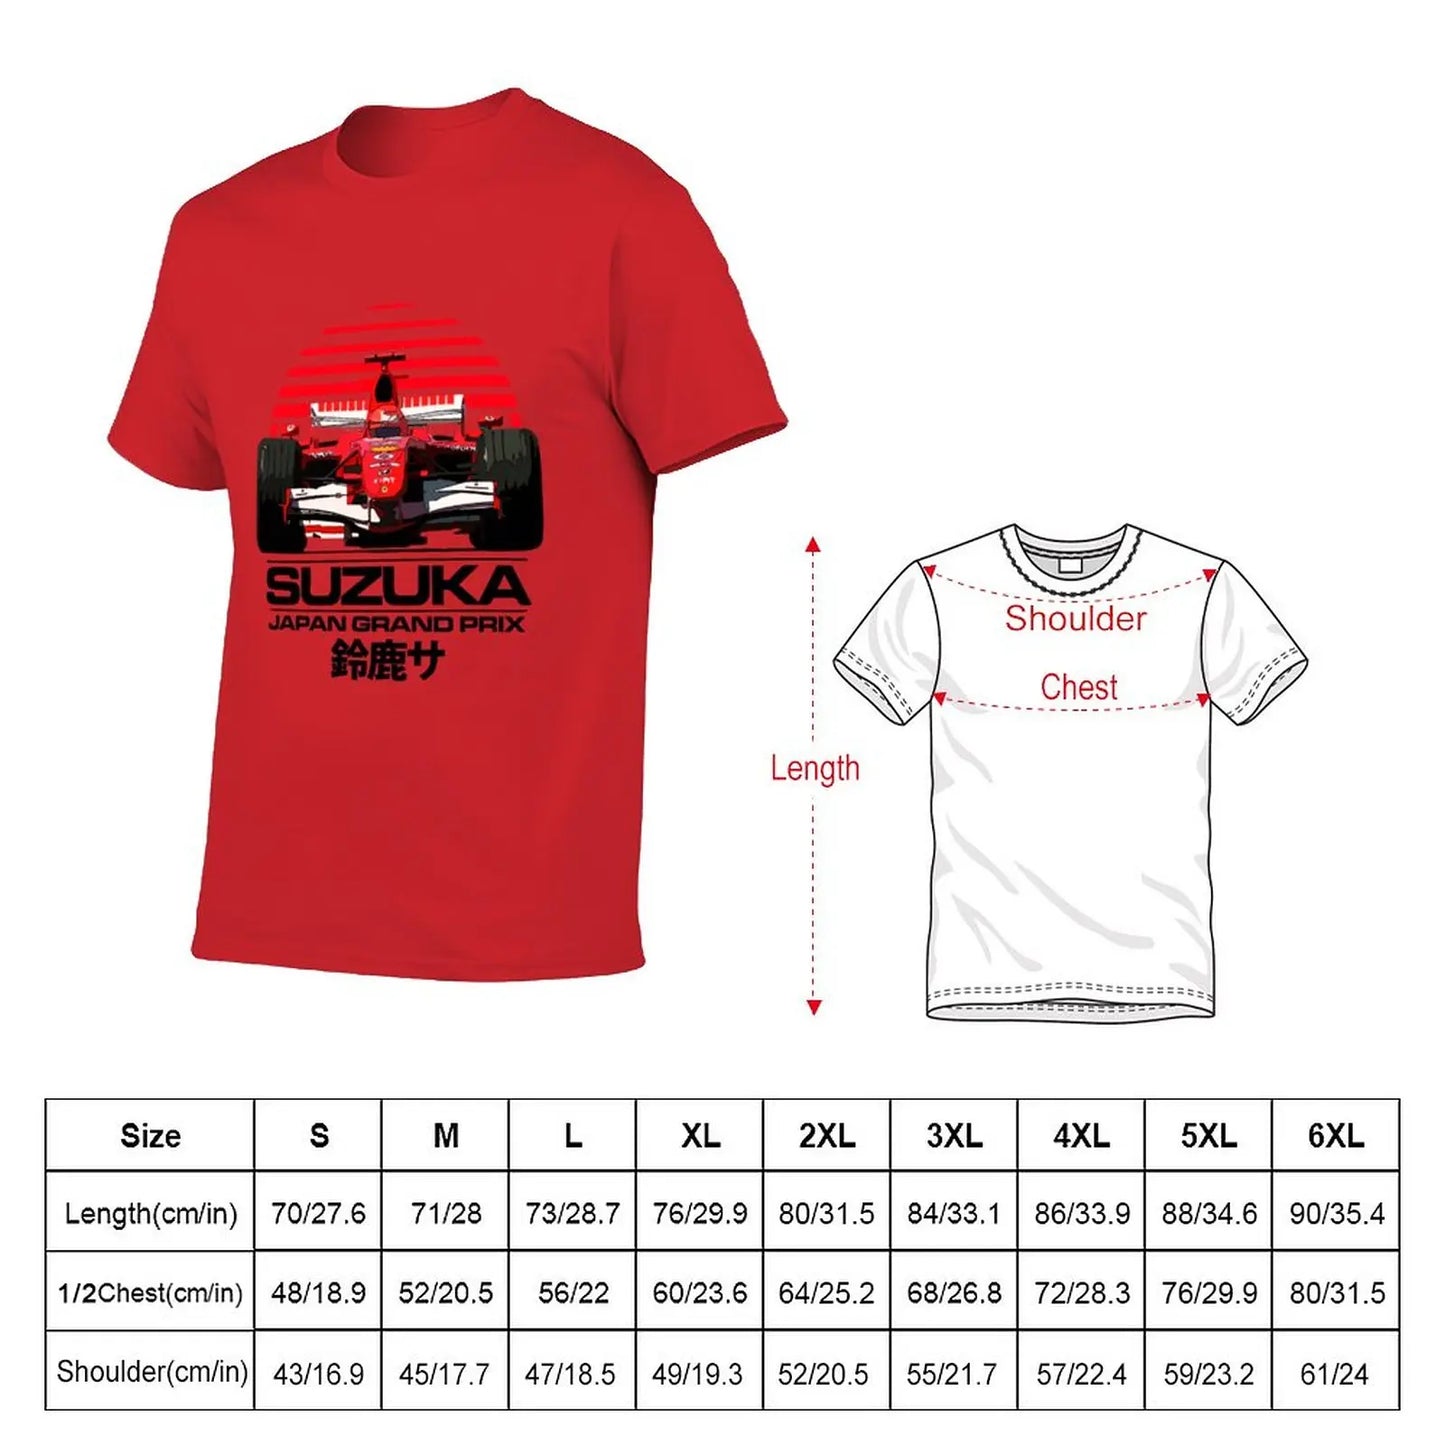 T-Shirt Ferrari Michael Schumacher F1 Suzuka Japan Grand Prix